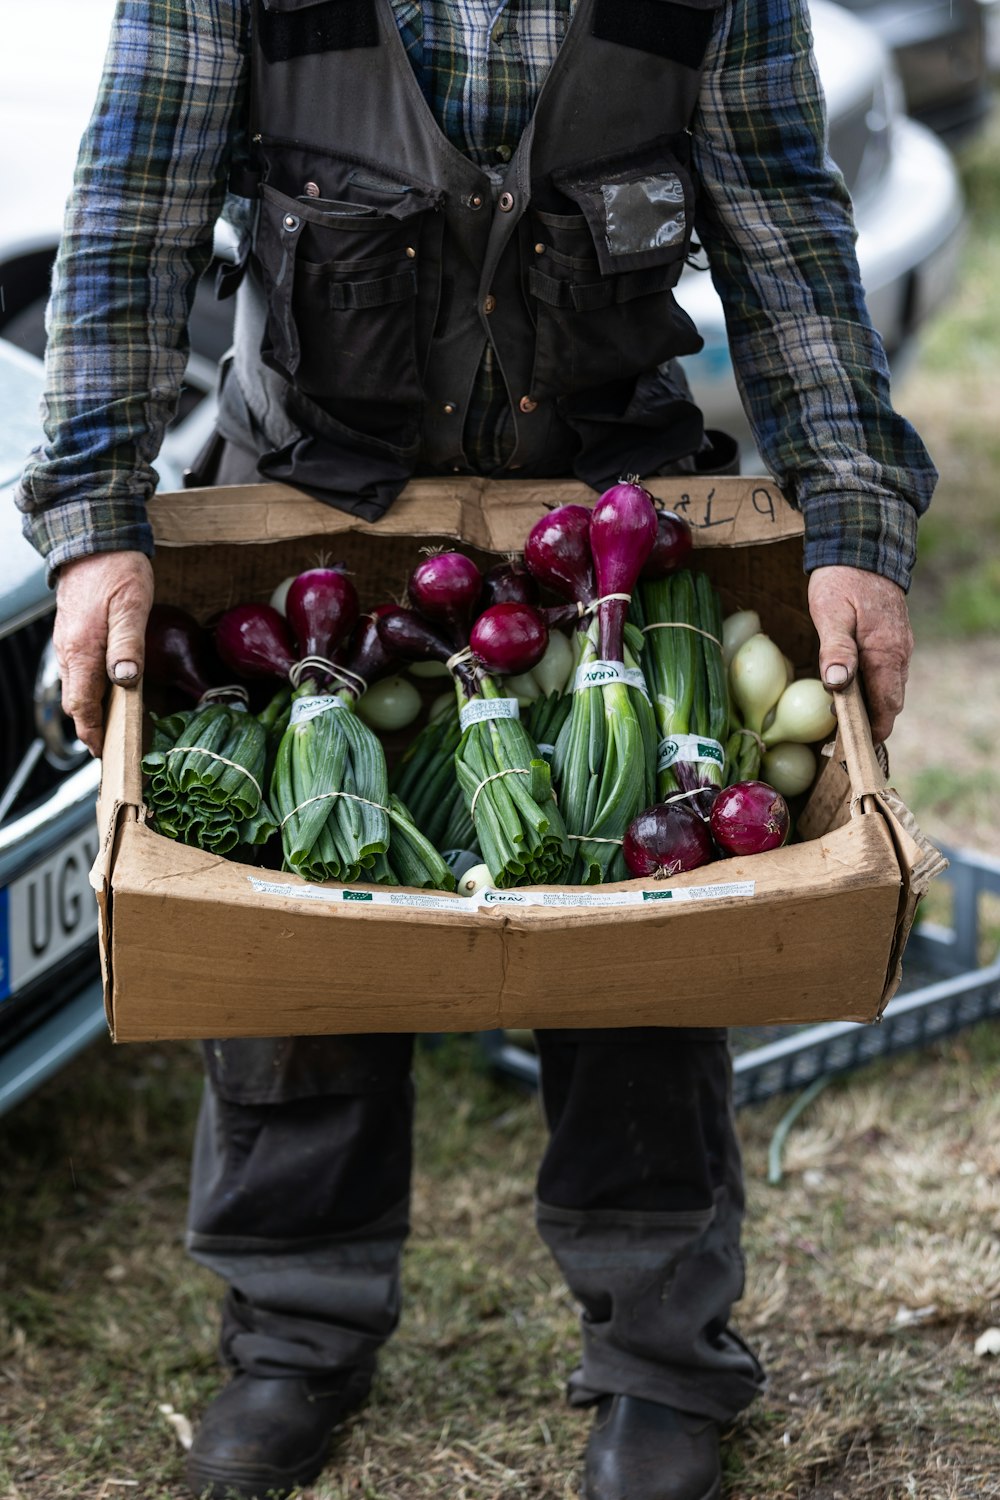 um homem segurando uma caixa de papelão cheia de legumes